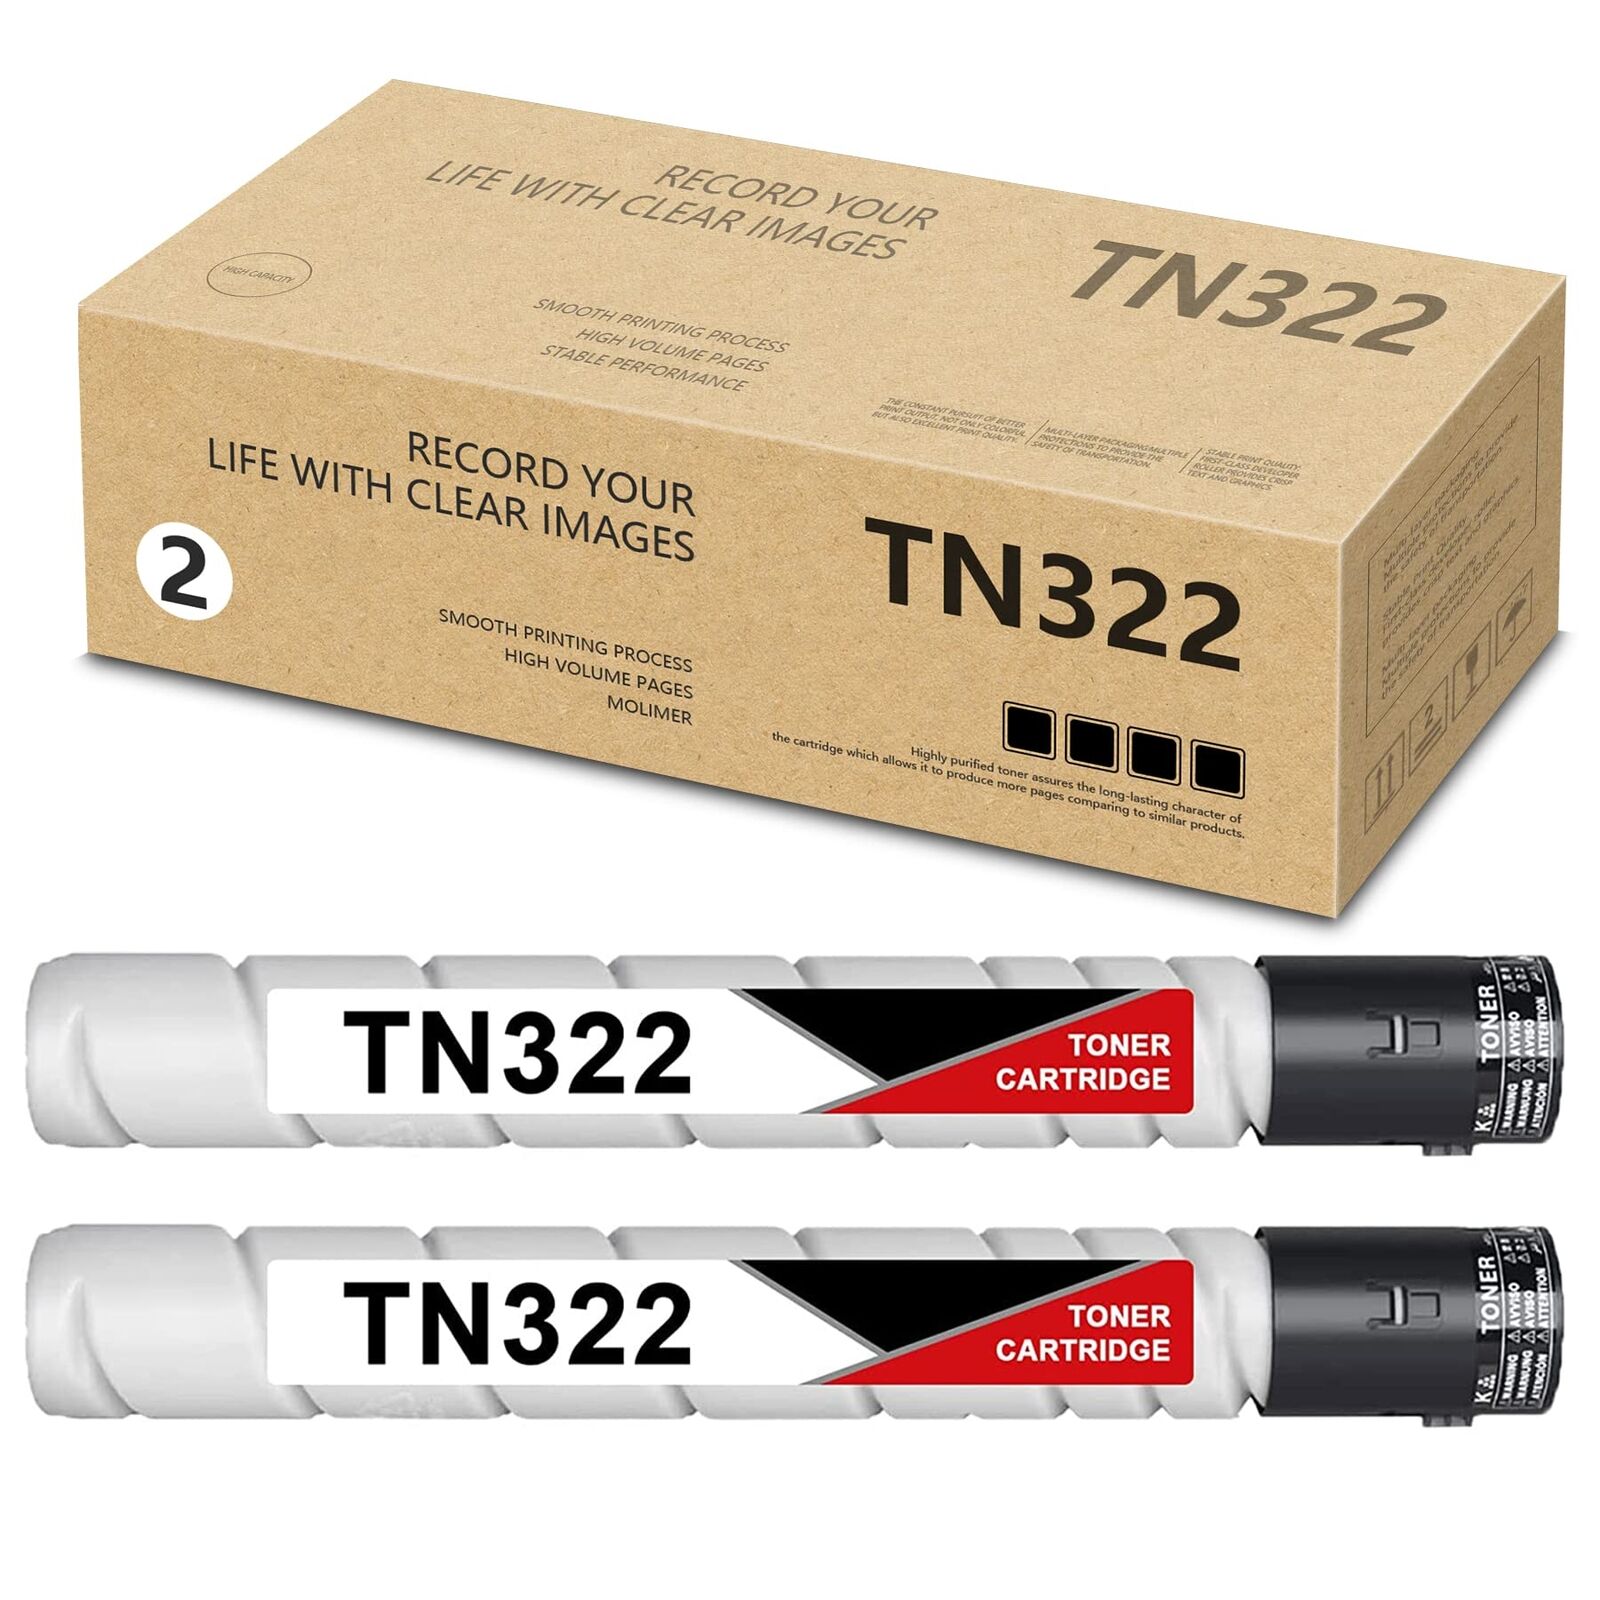 TN322 A33K030 Toner Cartridge 2-Pack for Konica Minolta Bizhub 284 224 364